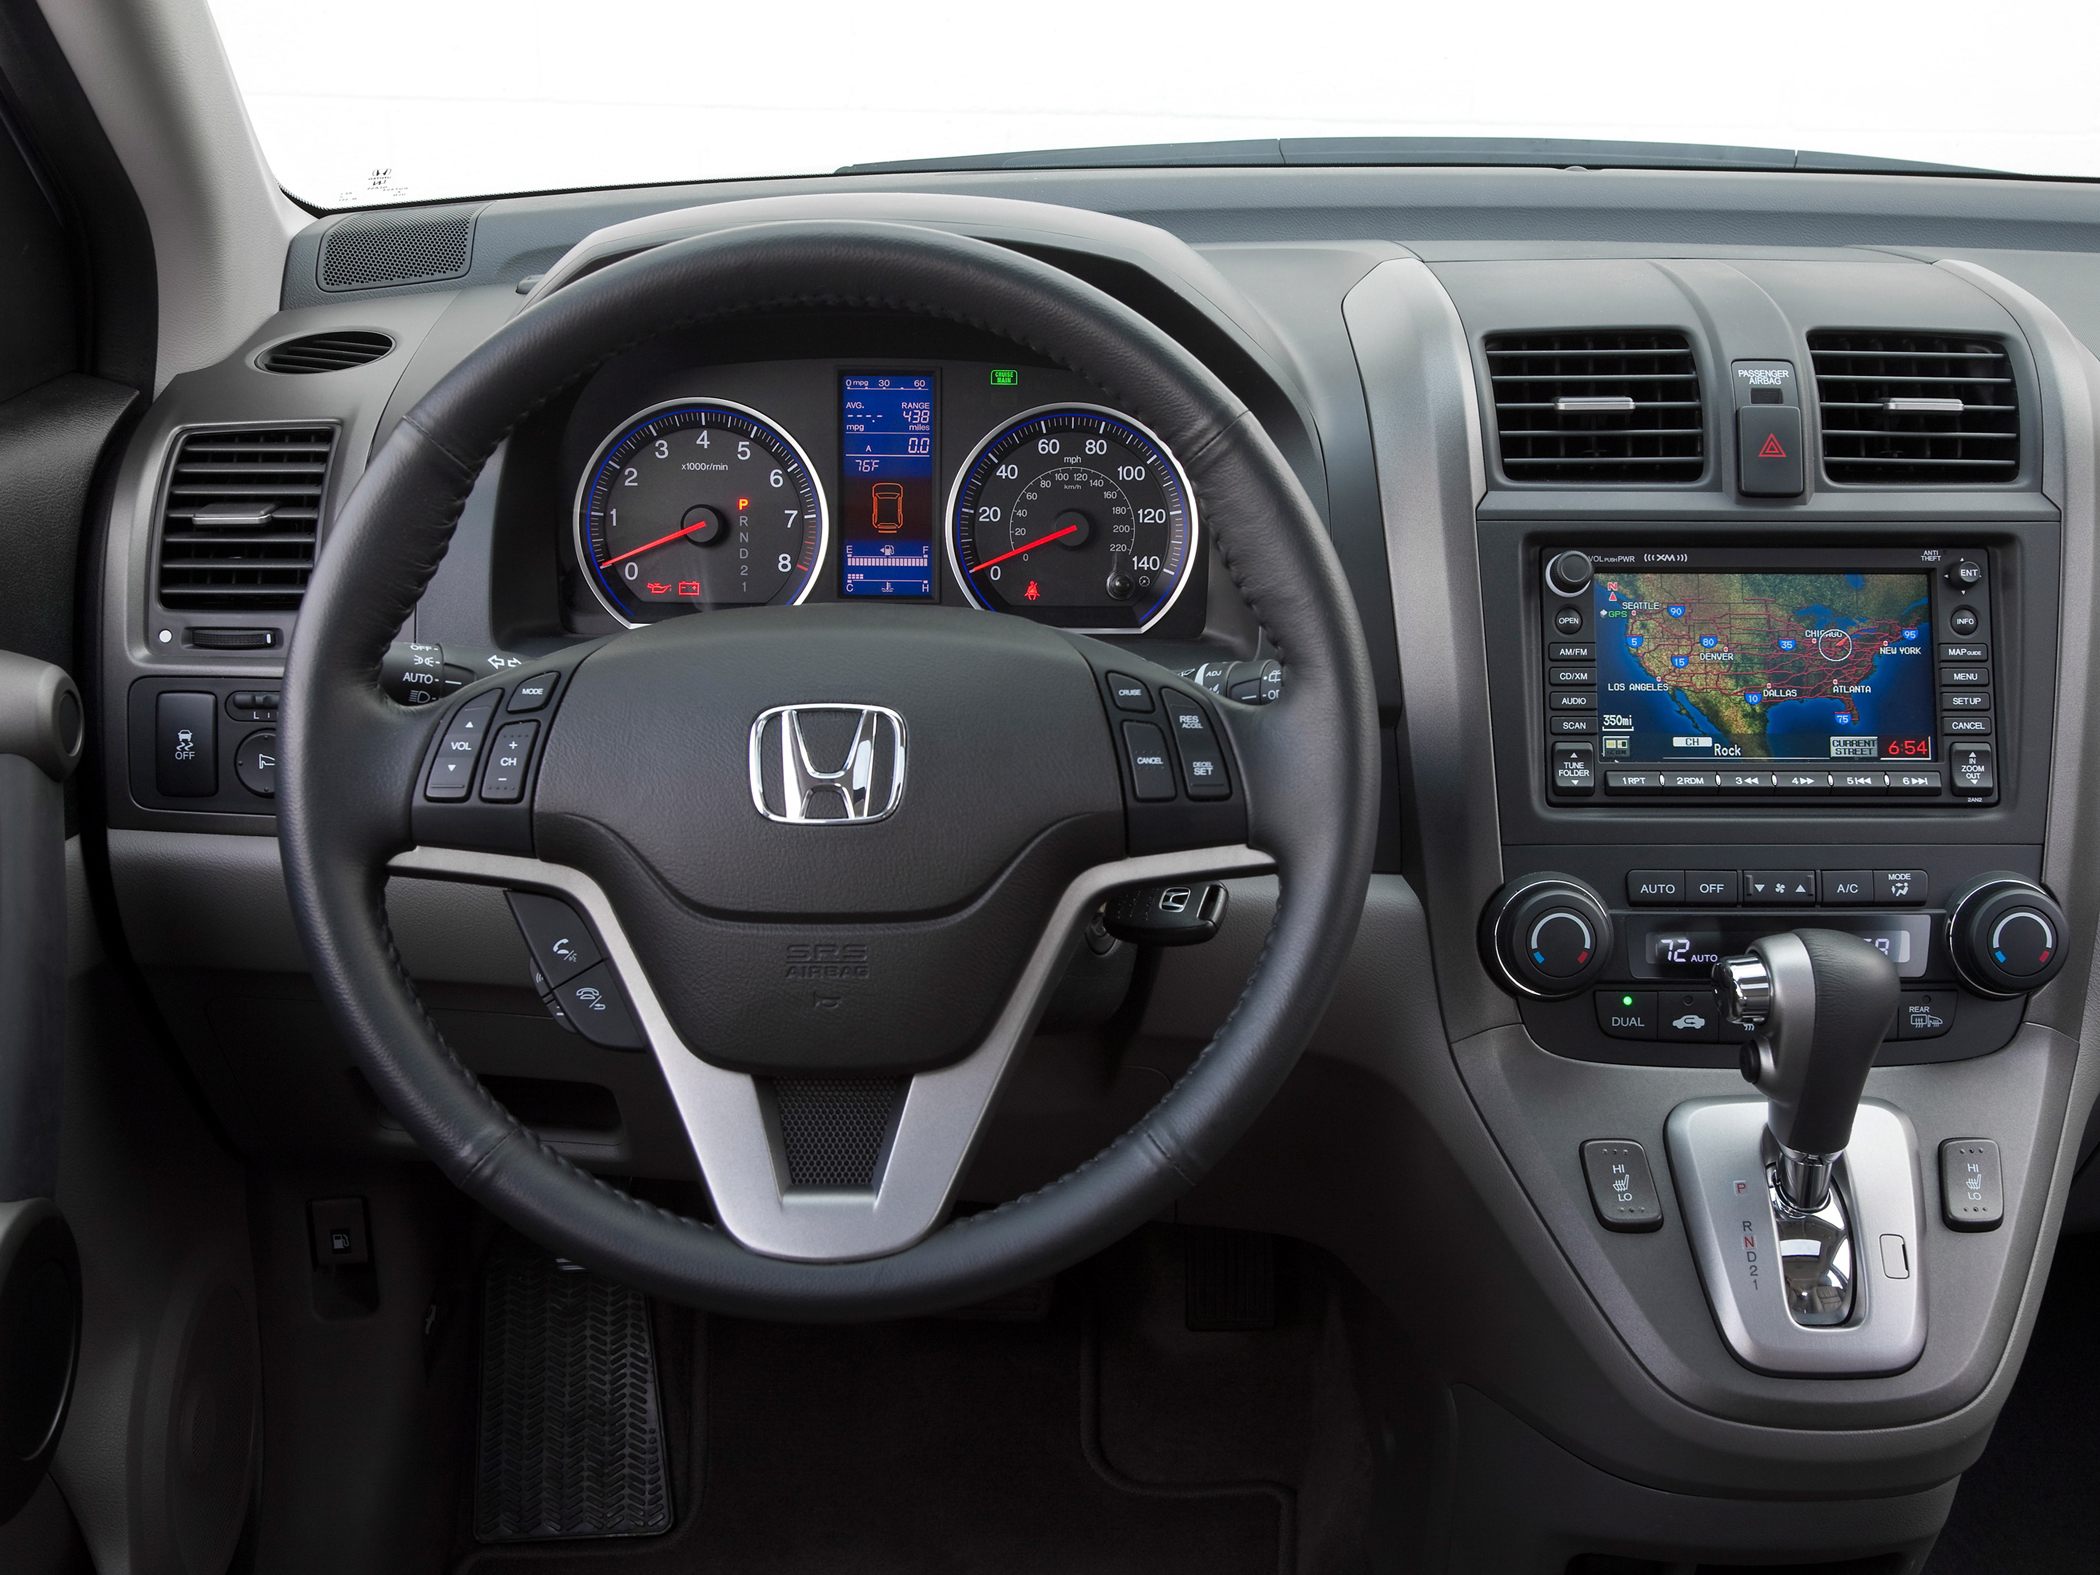 Honda v панель. Honda CR-V 2011. Honda CRV 2011. Honda CR-V 2010. Honda CRV 2010.